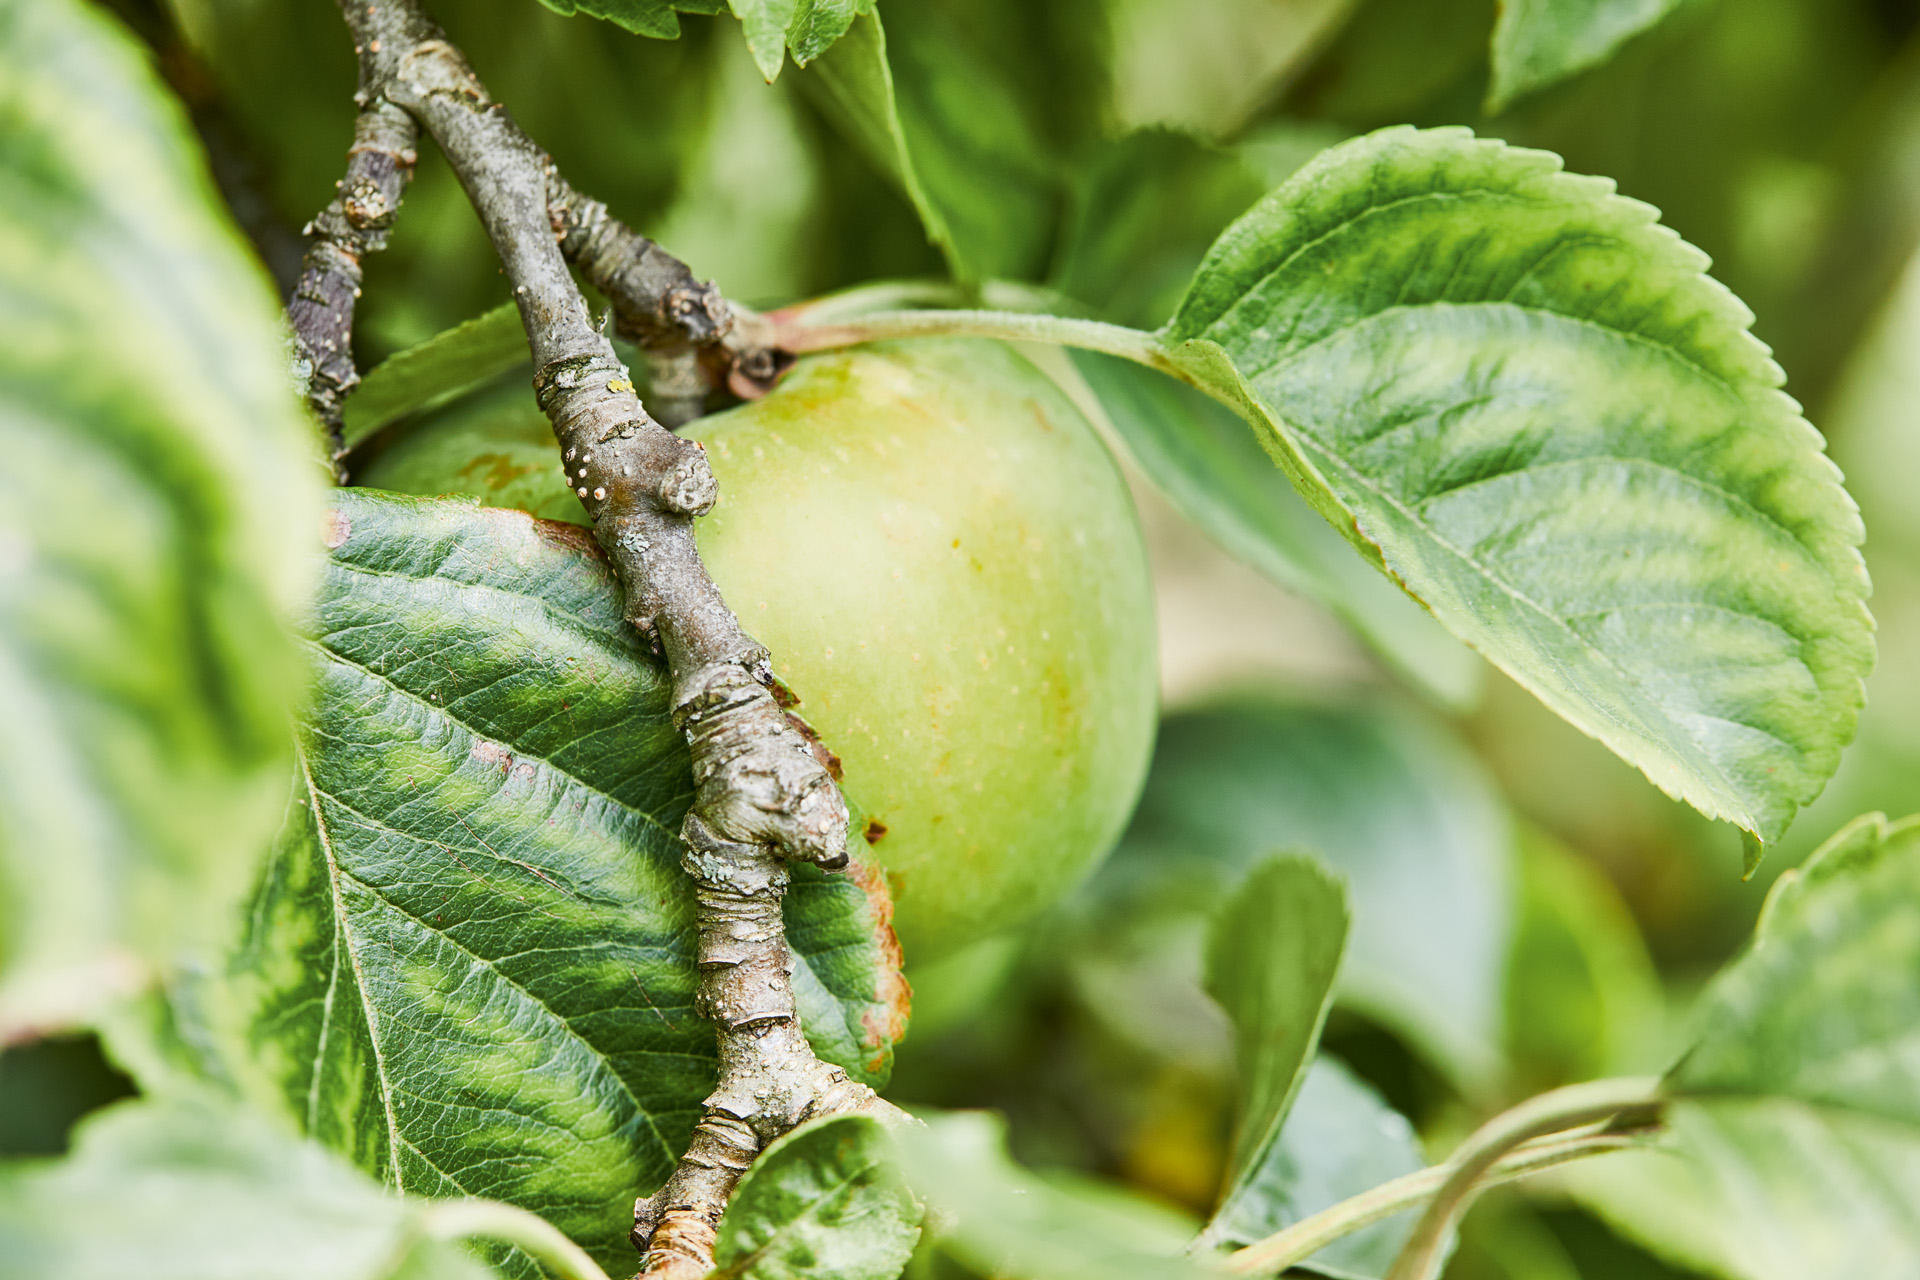  Imagem ampliada de uma maçã verde numa árvore